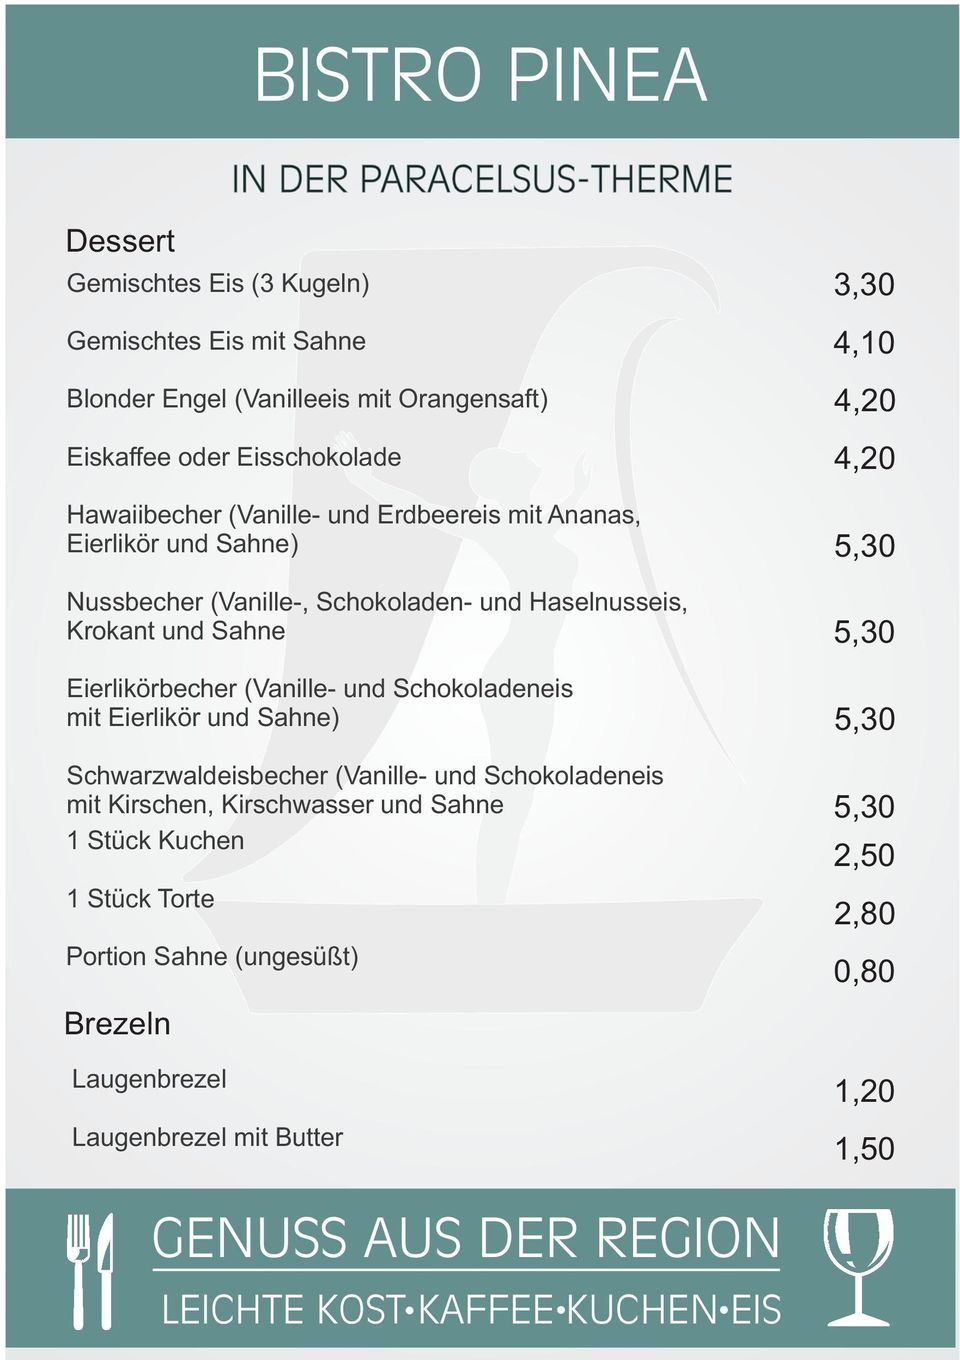 Eierlikörbecher (Vanille- und Schokoladeneis mit Eierlikör und Sahne) Schwarzwaldeisbecher (Vanille- und Schokoladeneis mit Kirschen,